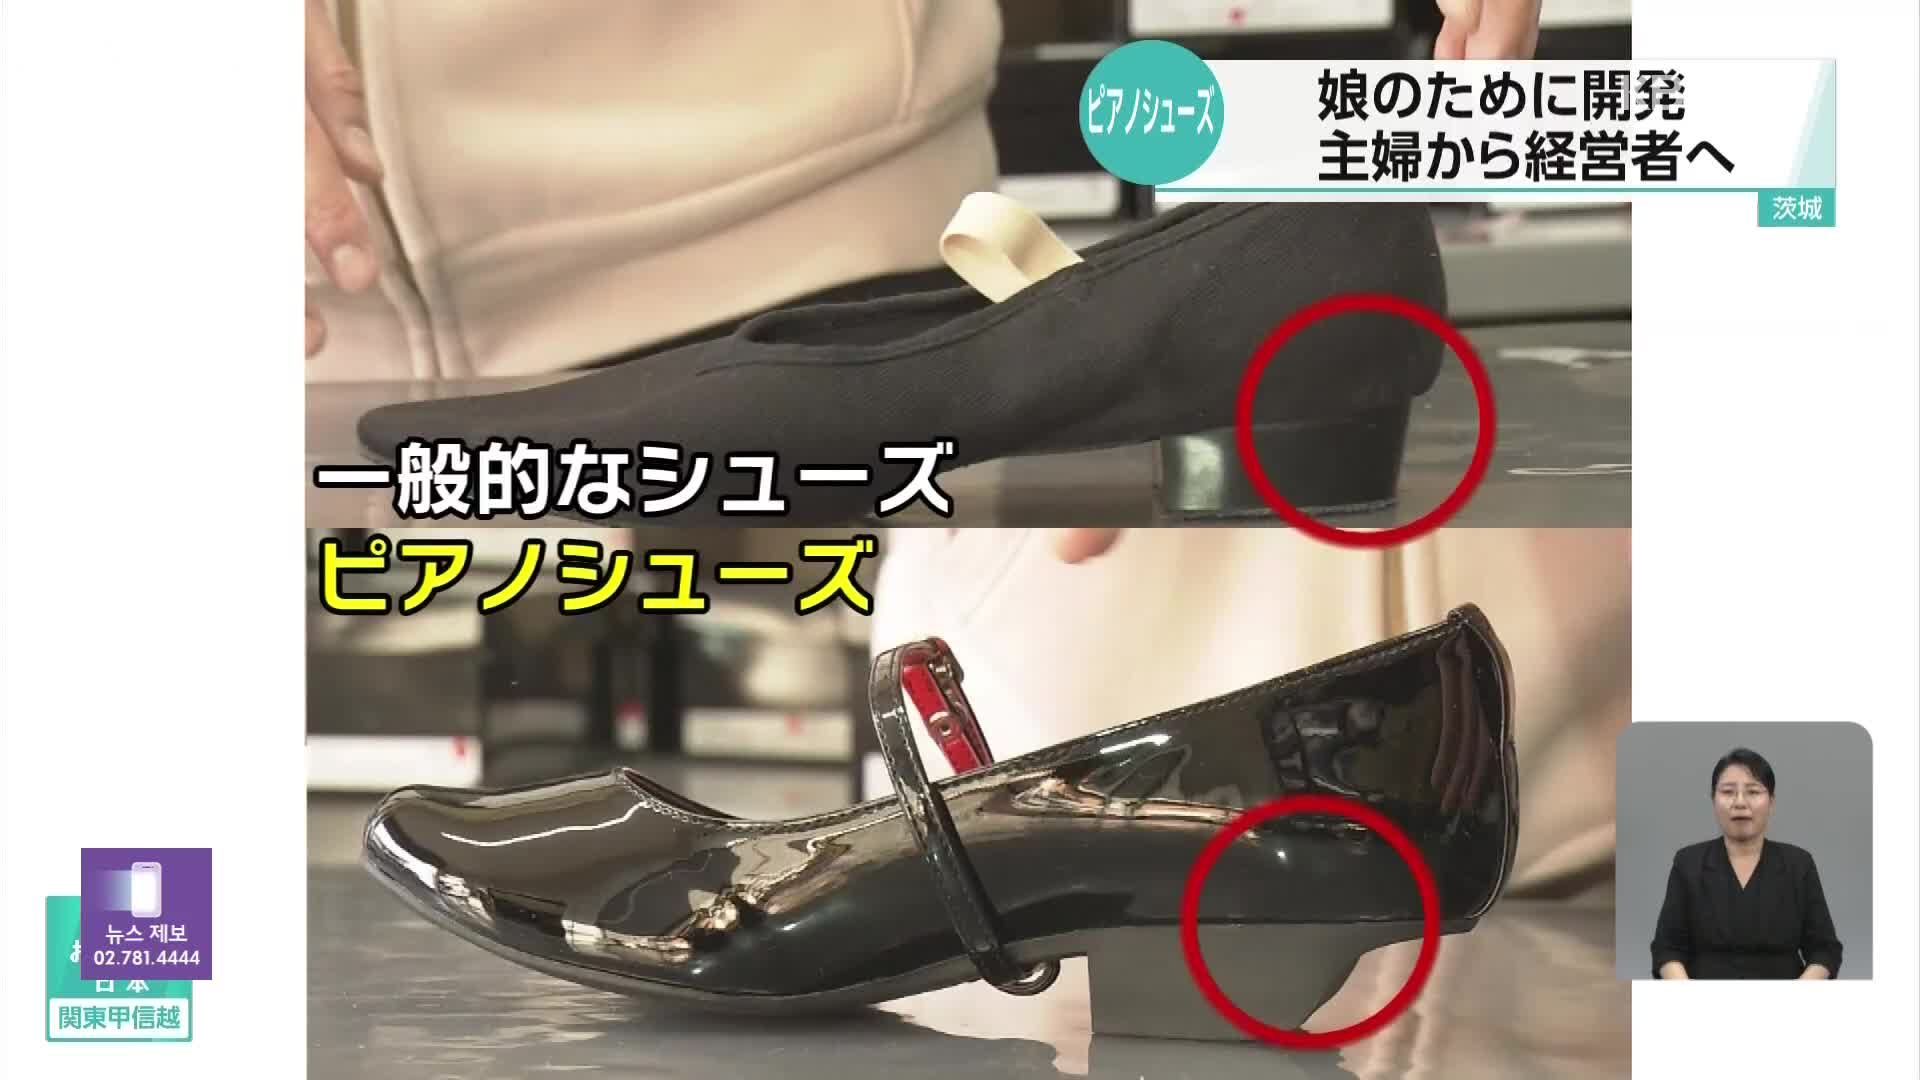 일본, ‘피아노 전용 신발’로 회사 세운 주부